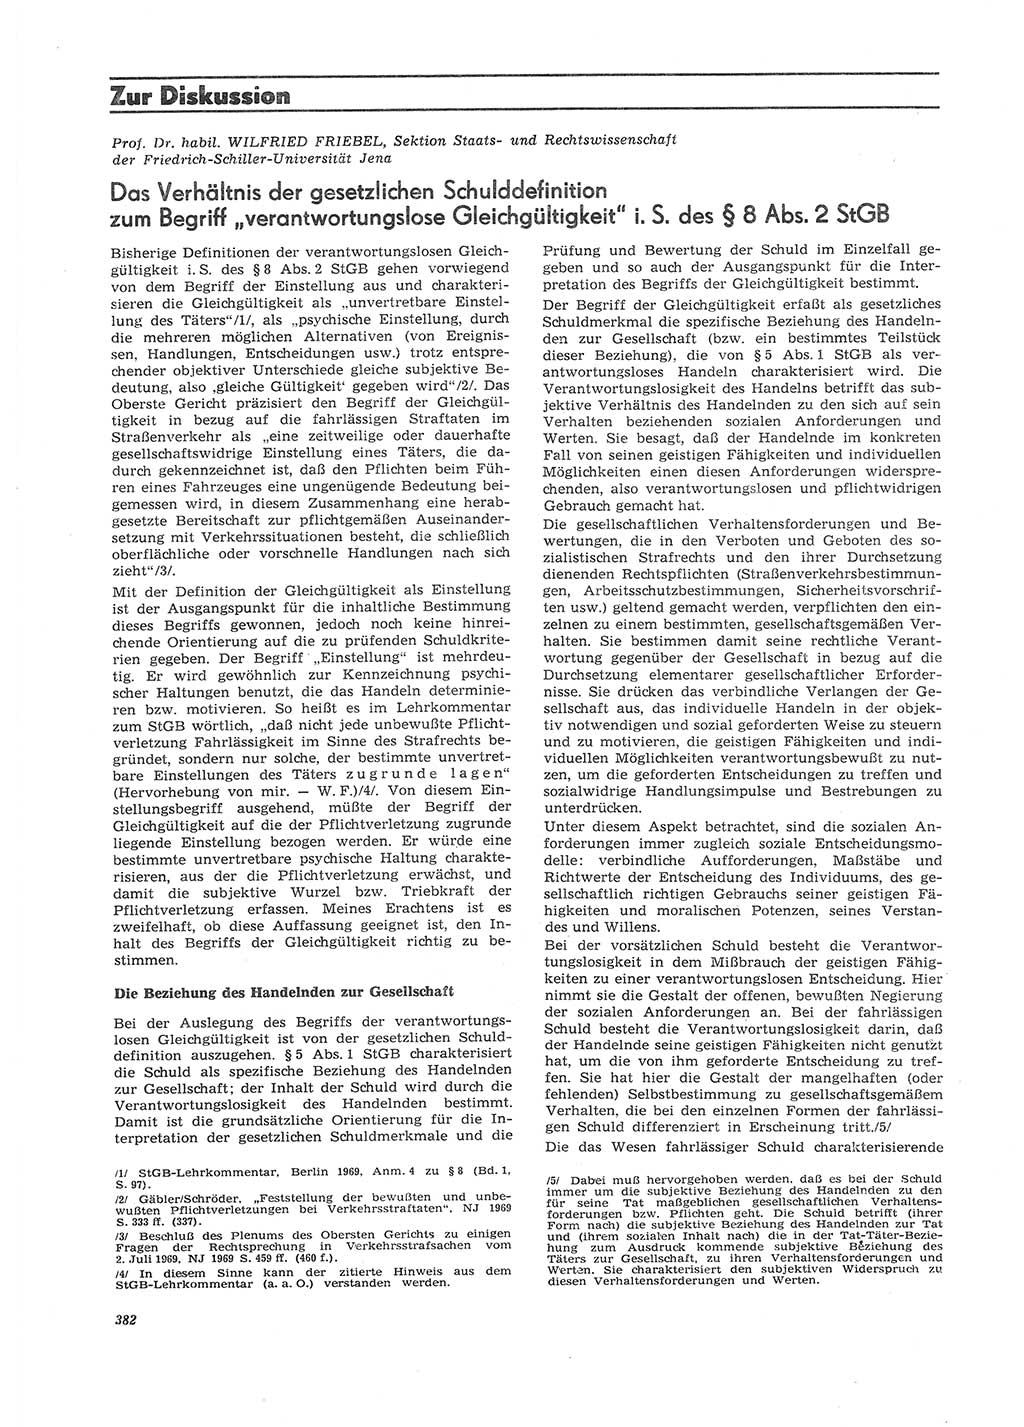 Neue Justiz (NJ), Zeitschrift für Recht und Rechtswissenschaft [Deutsche Demokratische Republik (DDR)], 26. Jahrgang 1972, Seite 382 (NJ DDR 1972, S. 382)